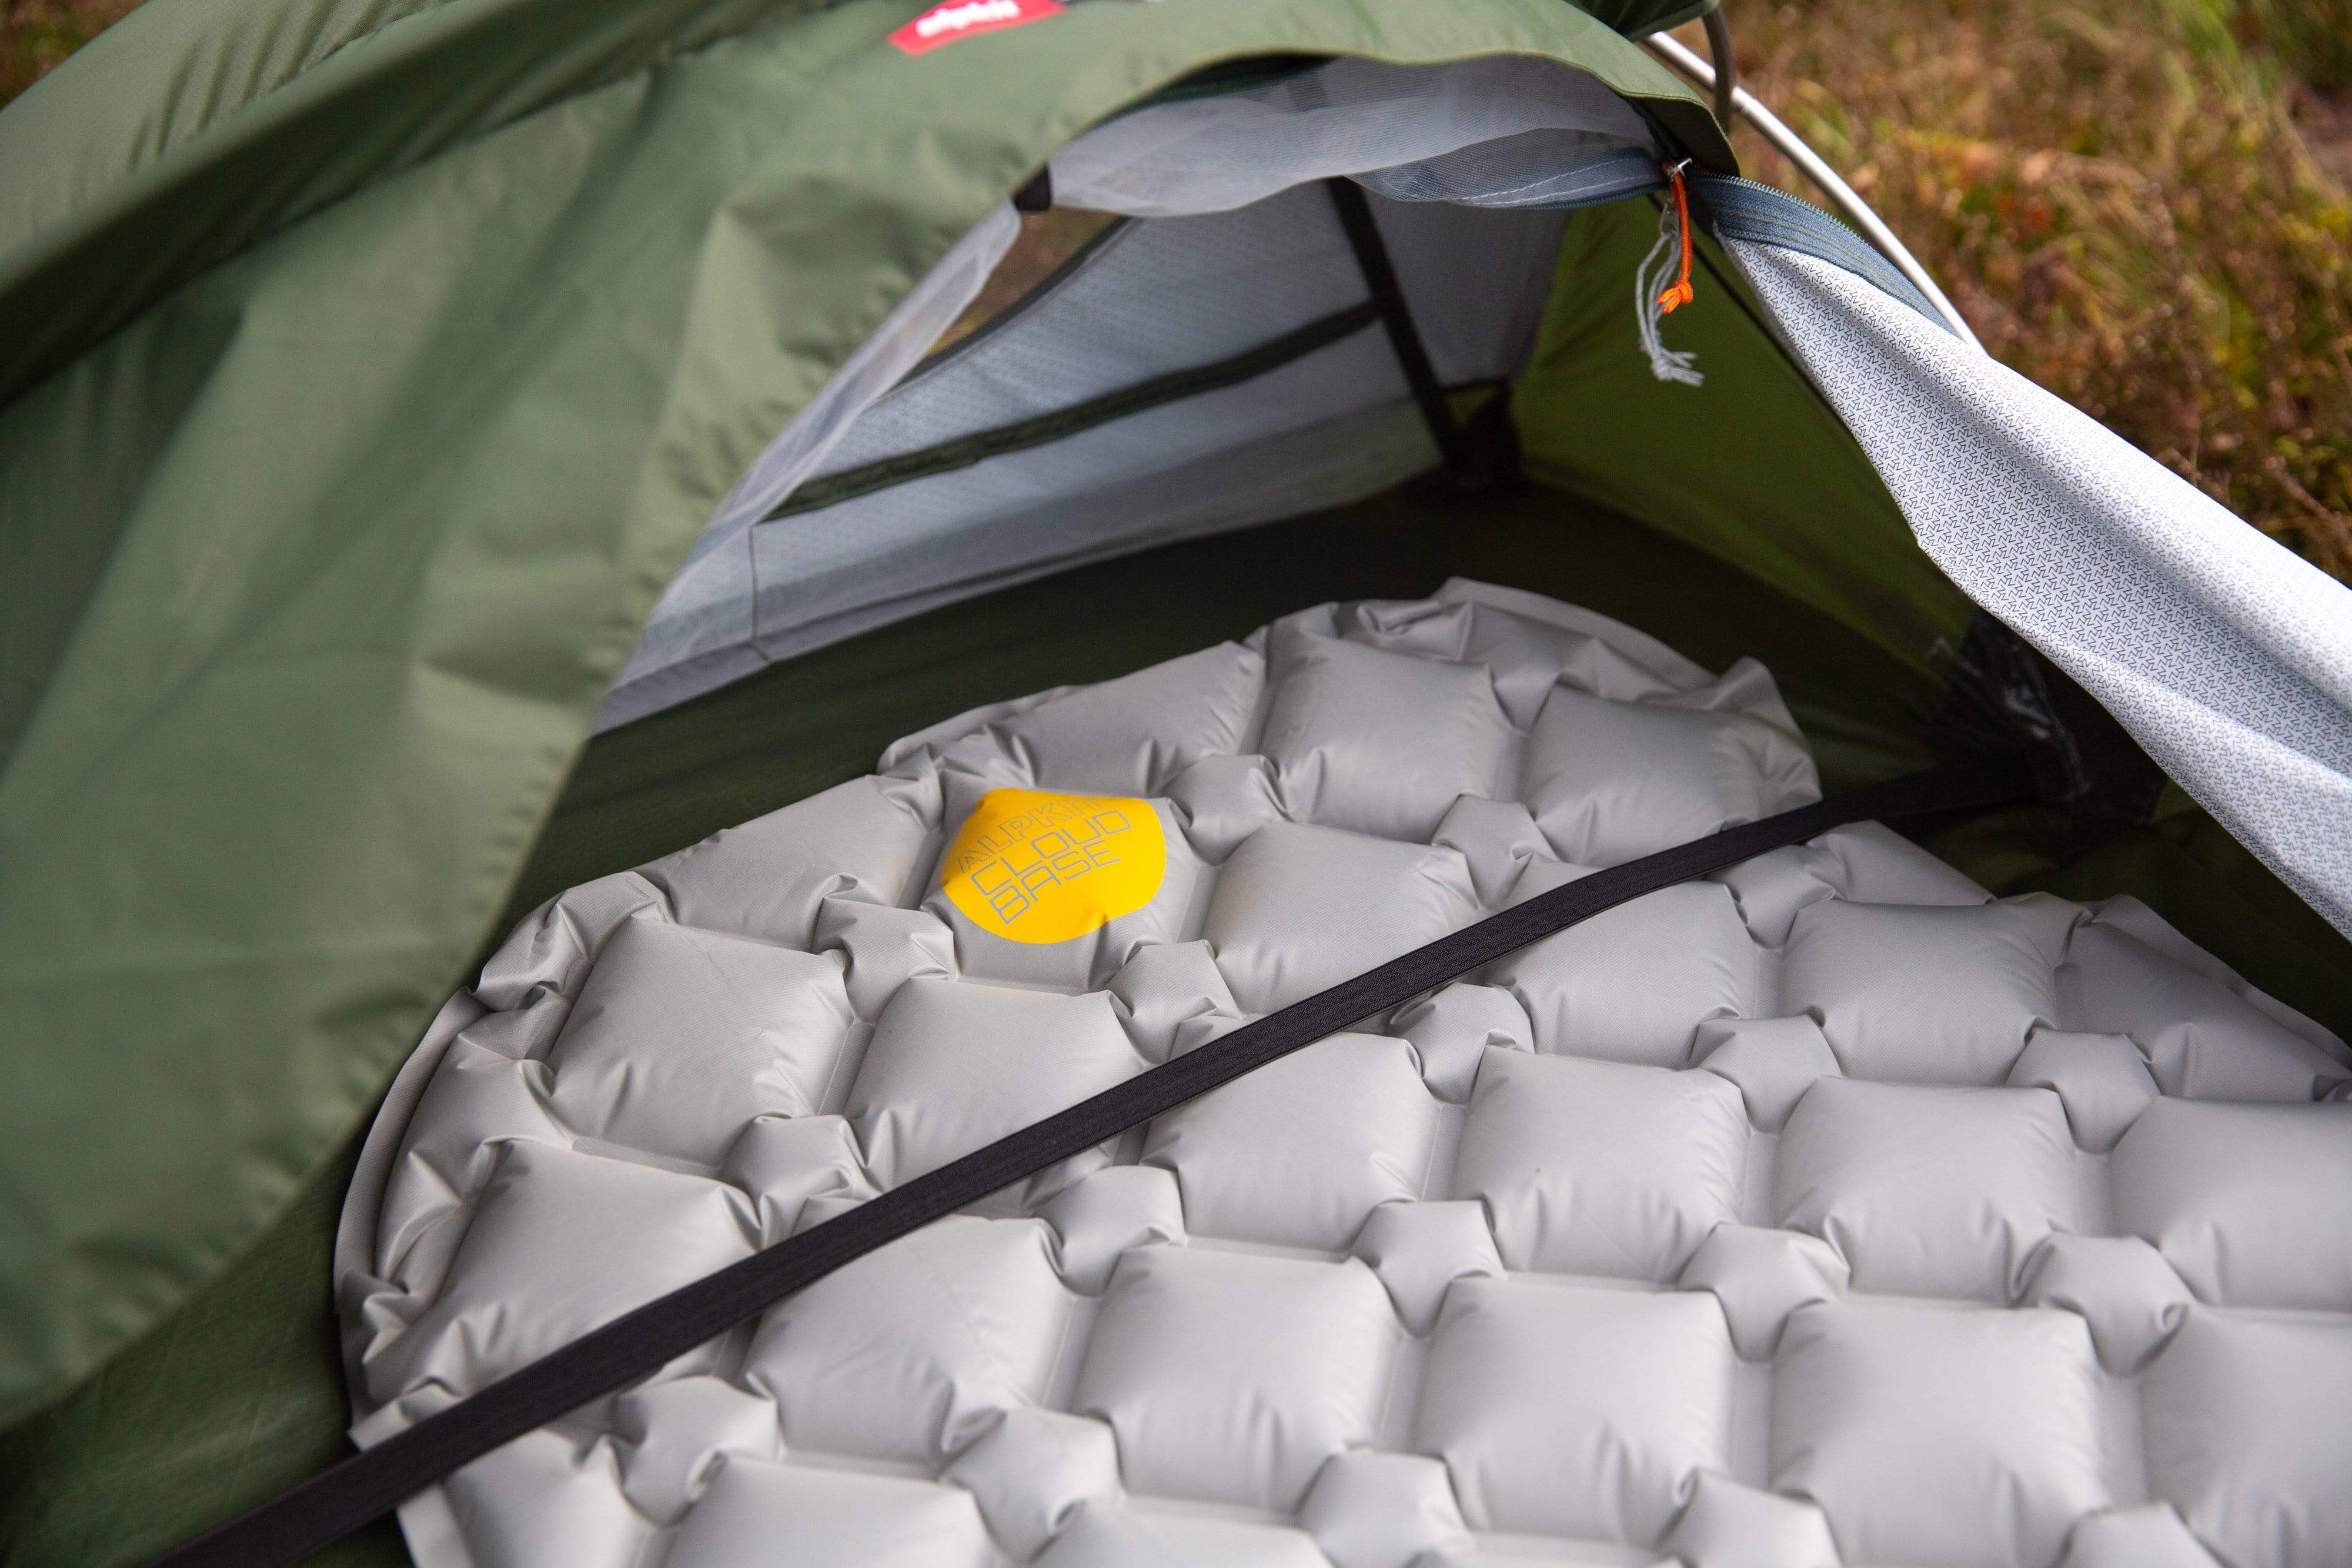 Aluminum Foil Mat Sleeping Mat For Camping Insulating Blanket Mat